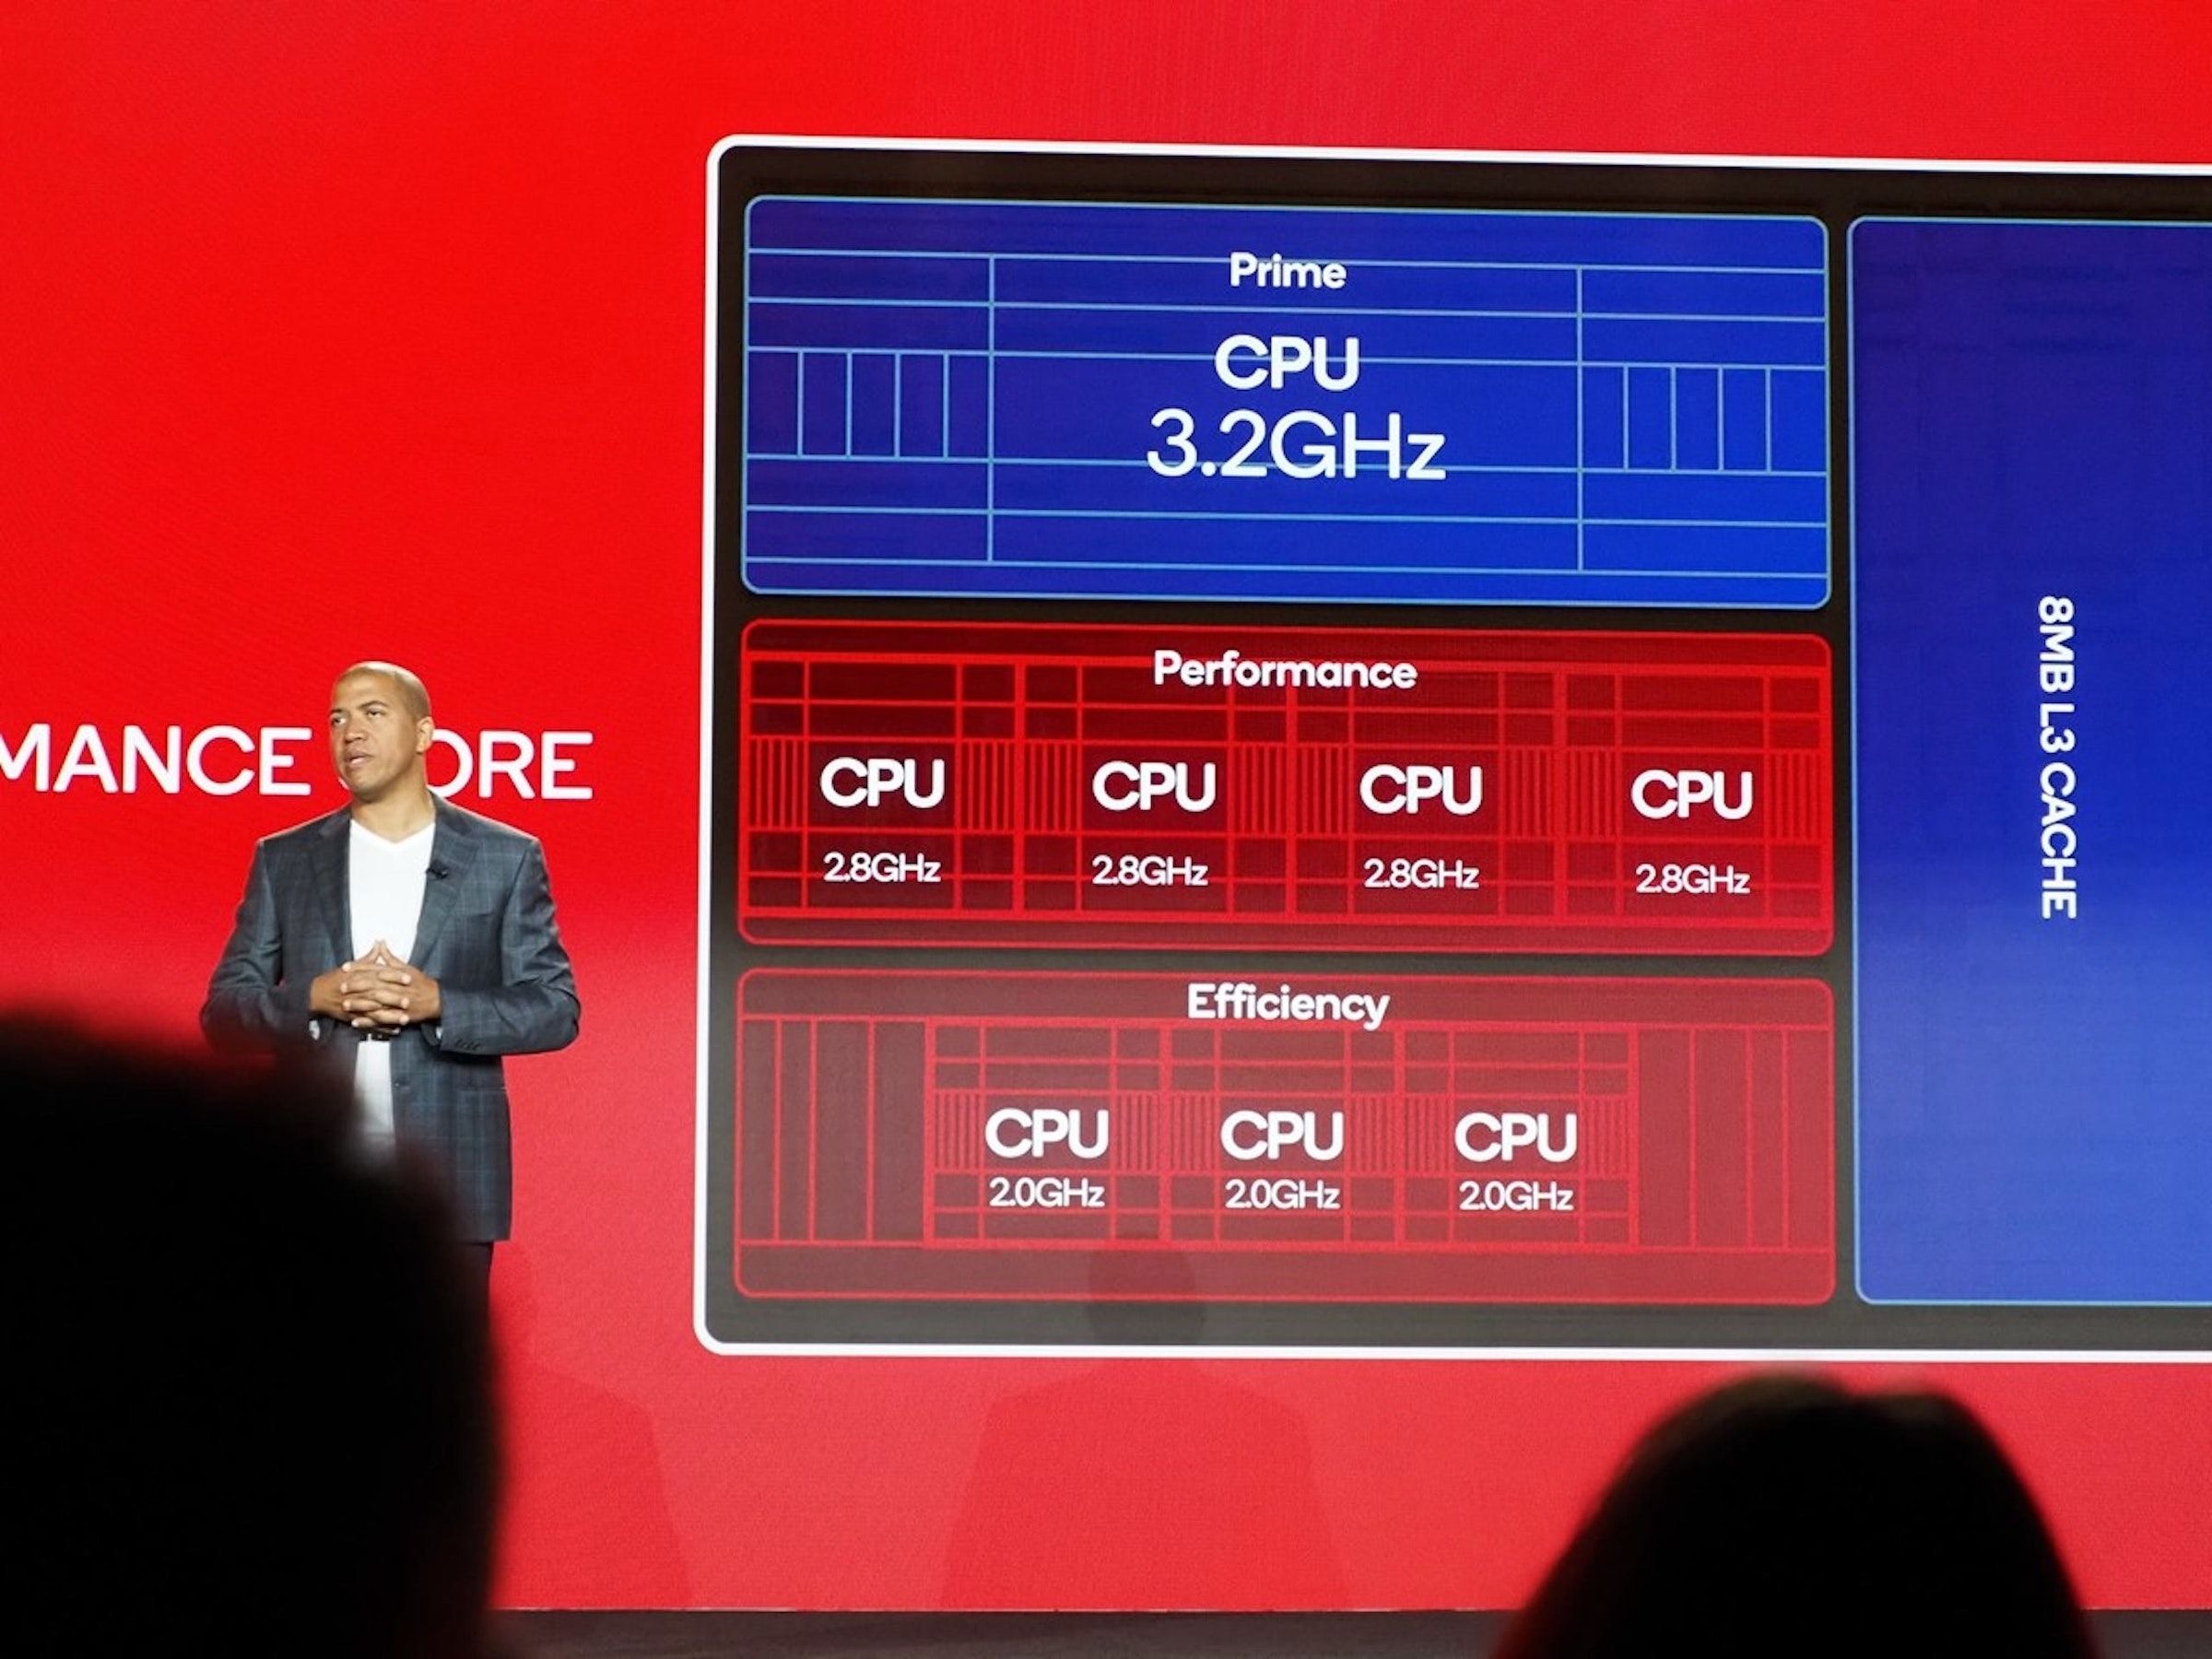 照片中提到了MANCE ORE、CPU、2.8GHz，包含了顯示裝置、高通金魚草、高通公司、台積電、顯示裝置